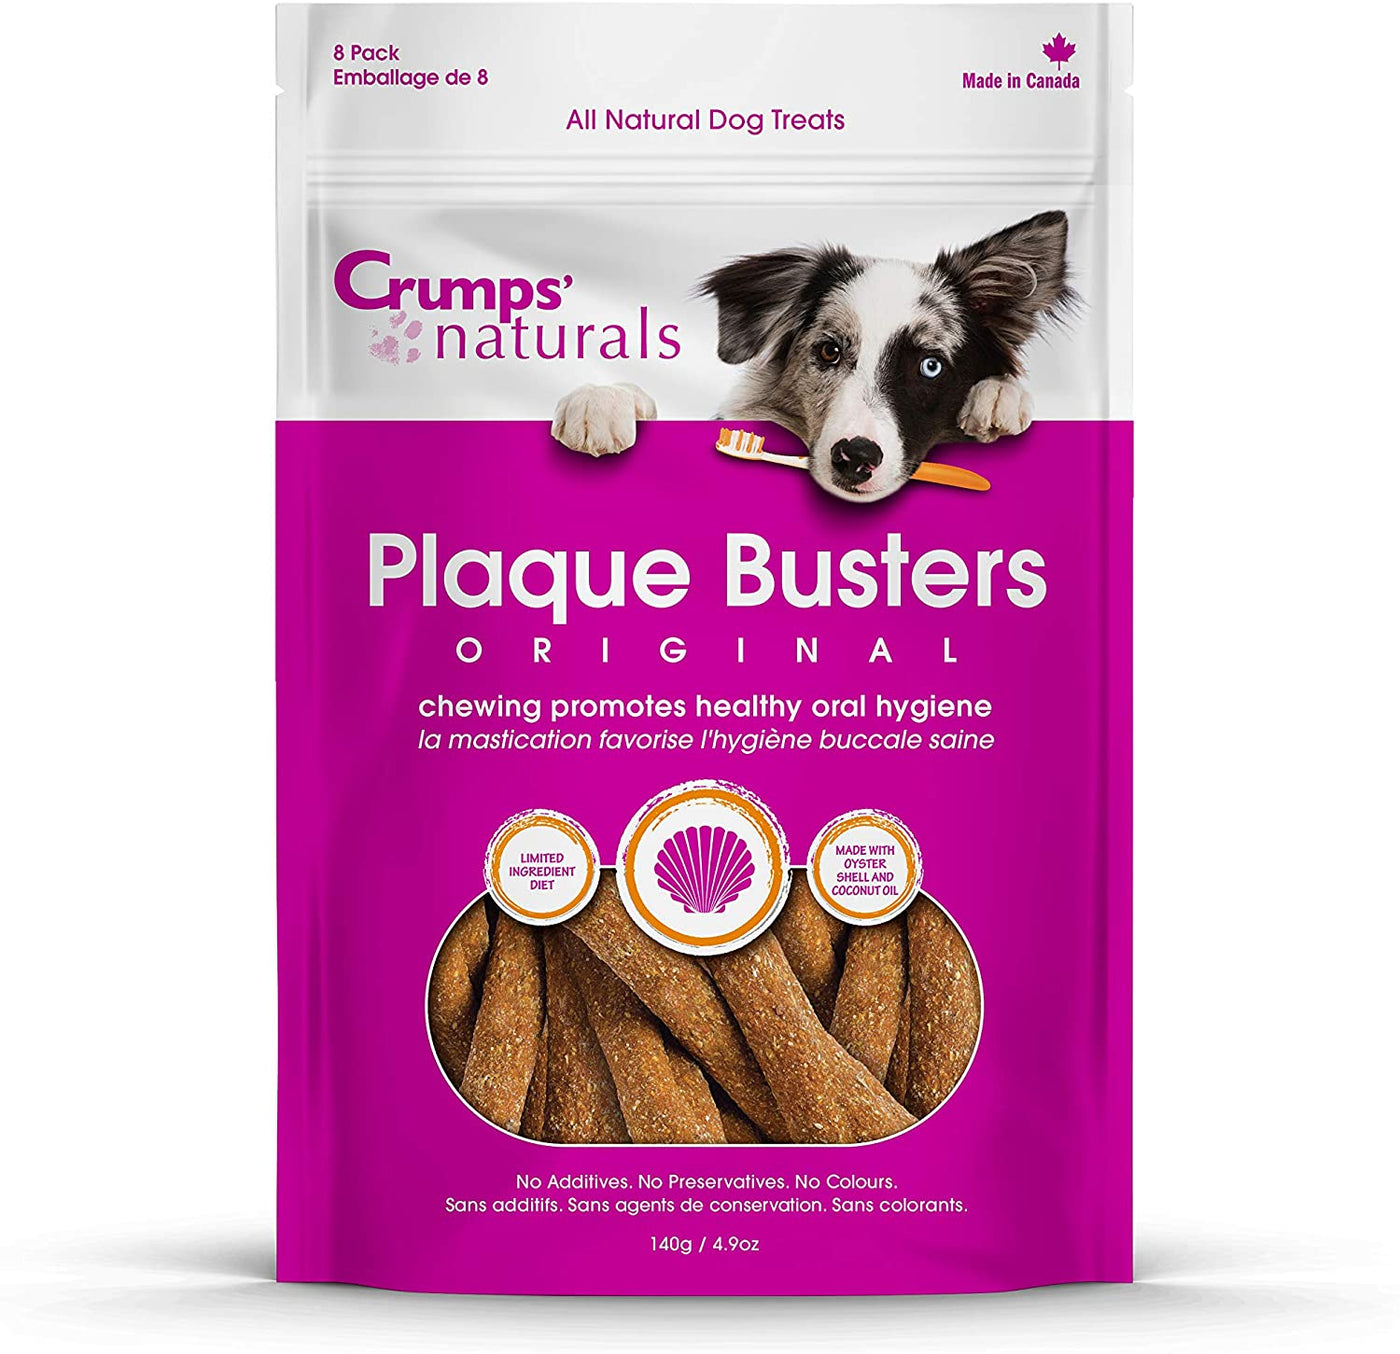 Crumps Naturals Plaque Busters Original Dog Treats Bag